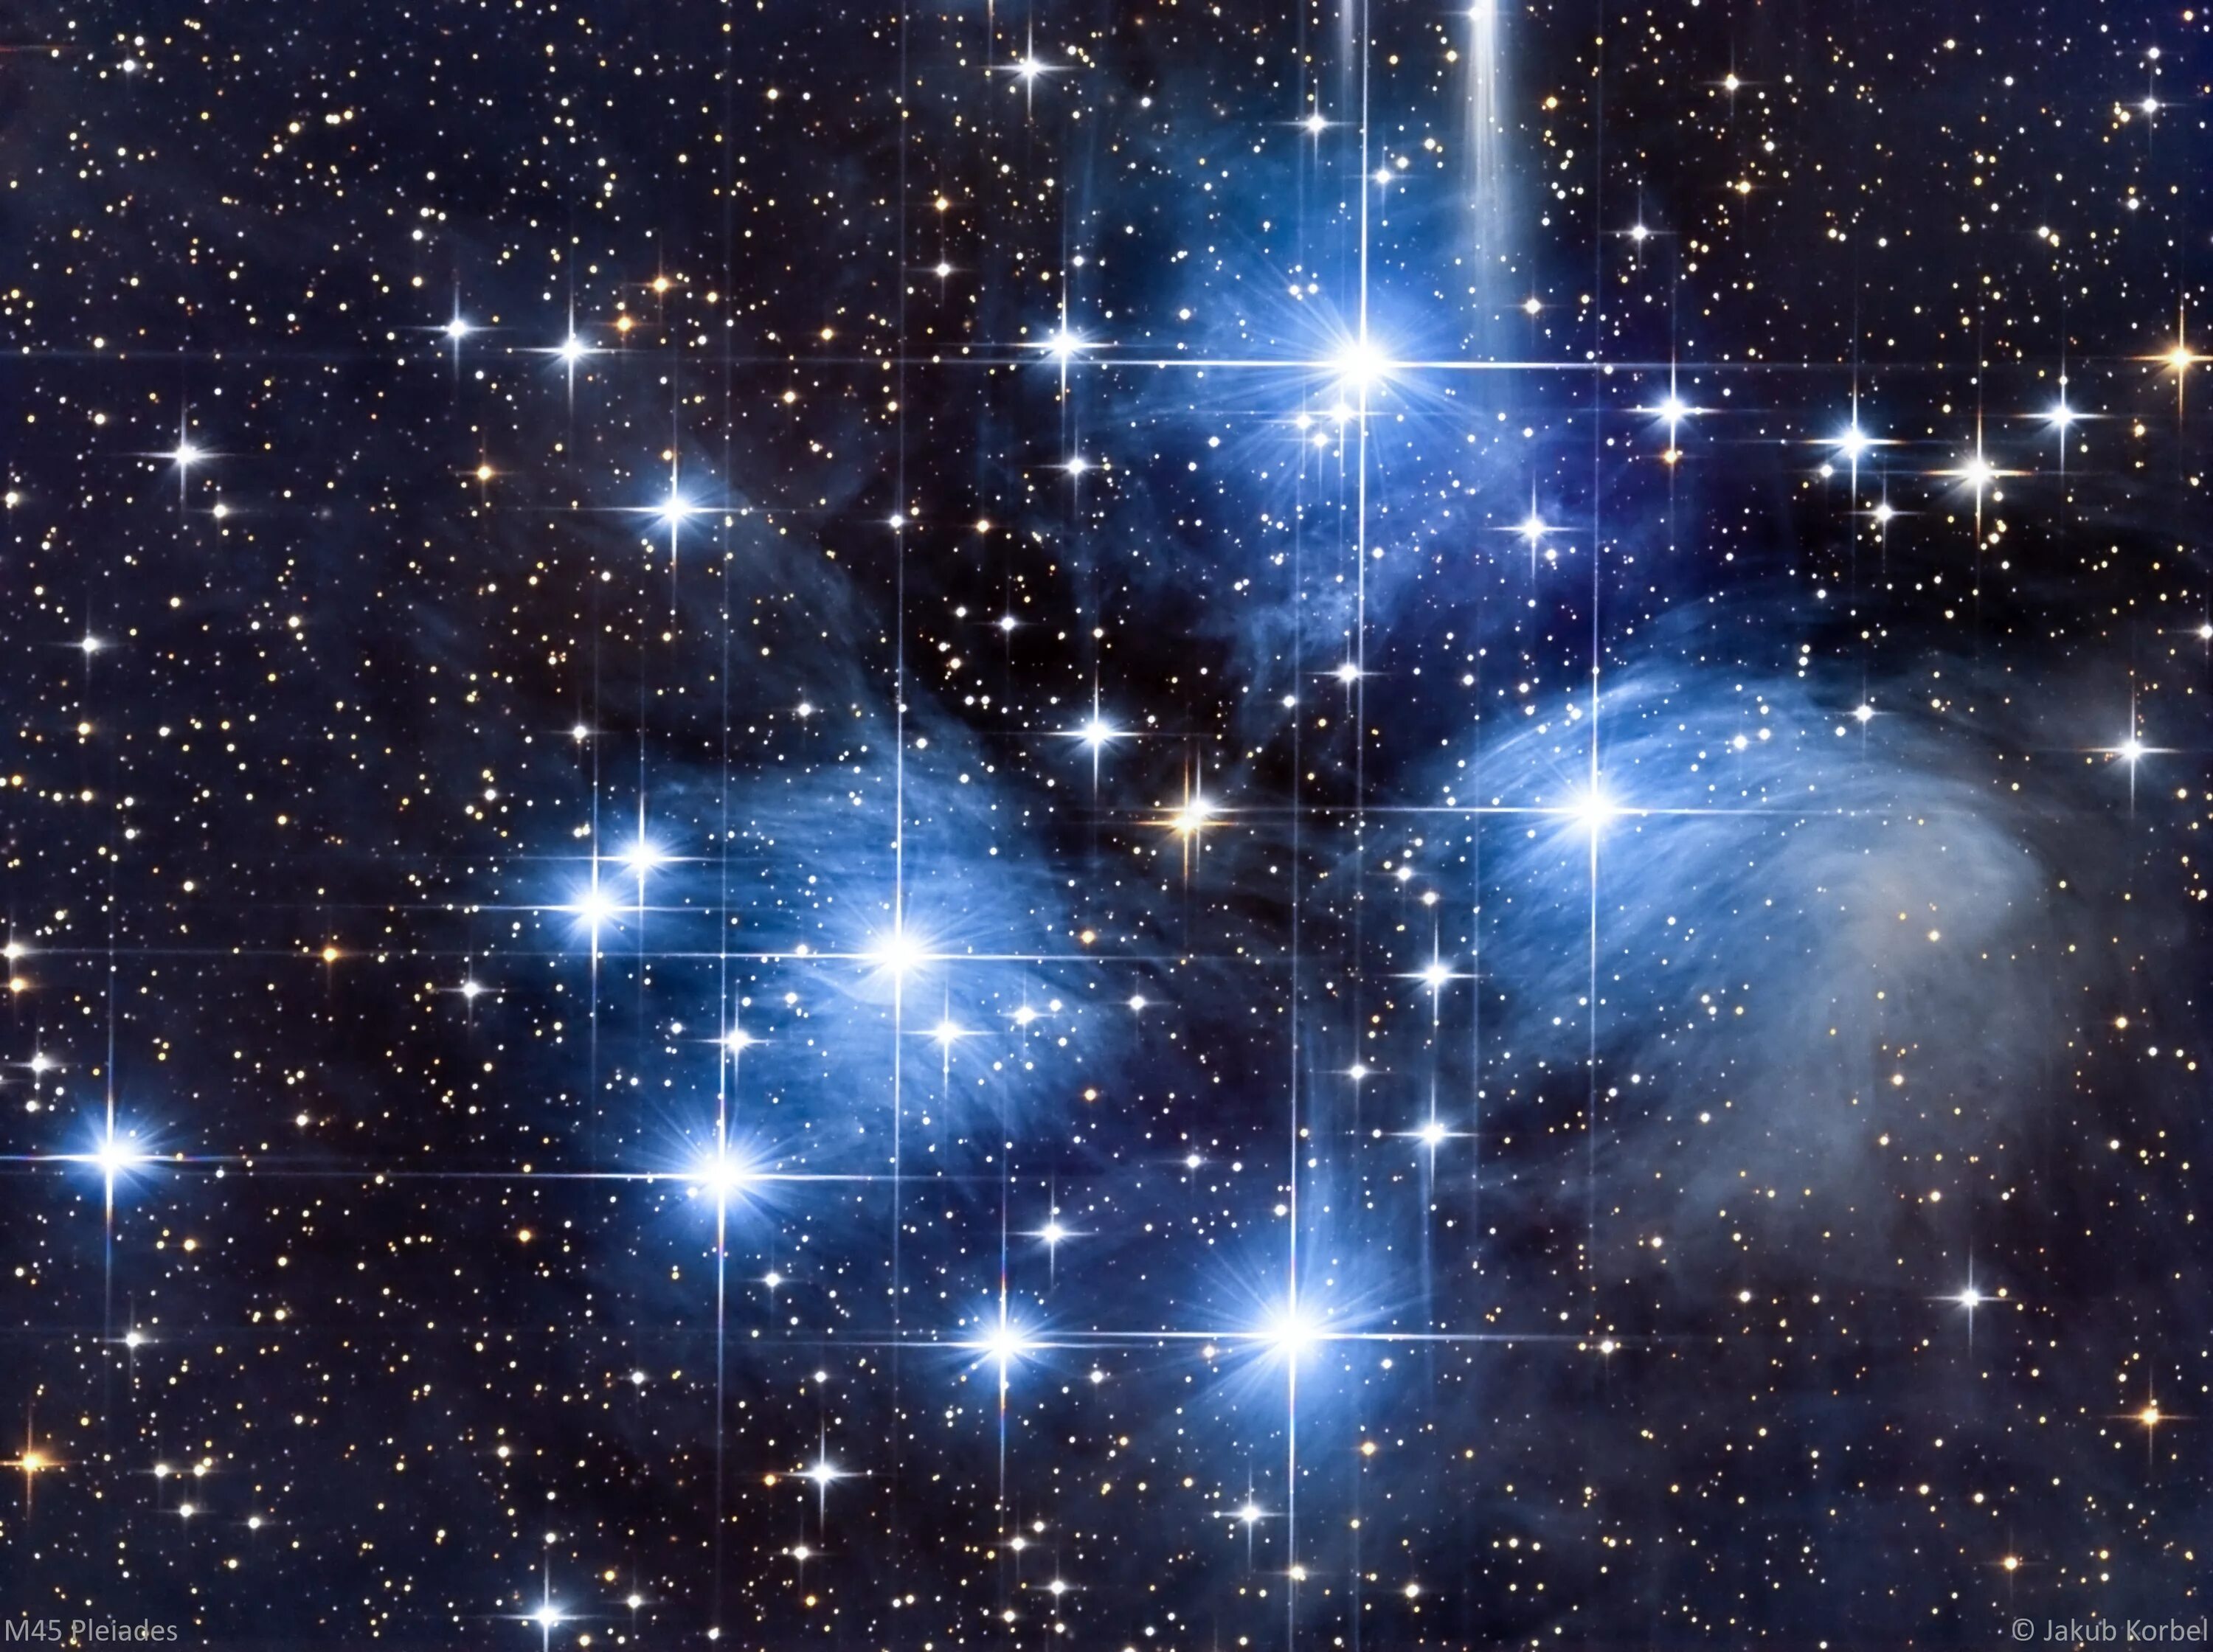 Созвездие Плеяд Созвездие Плеяды. Альциона Плеяды. M45 Плеяды. Созвездие Плеяды (семизвездие).. Звездное скопление в созвездии